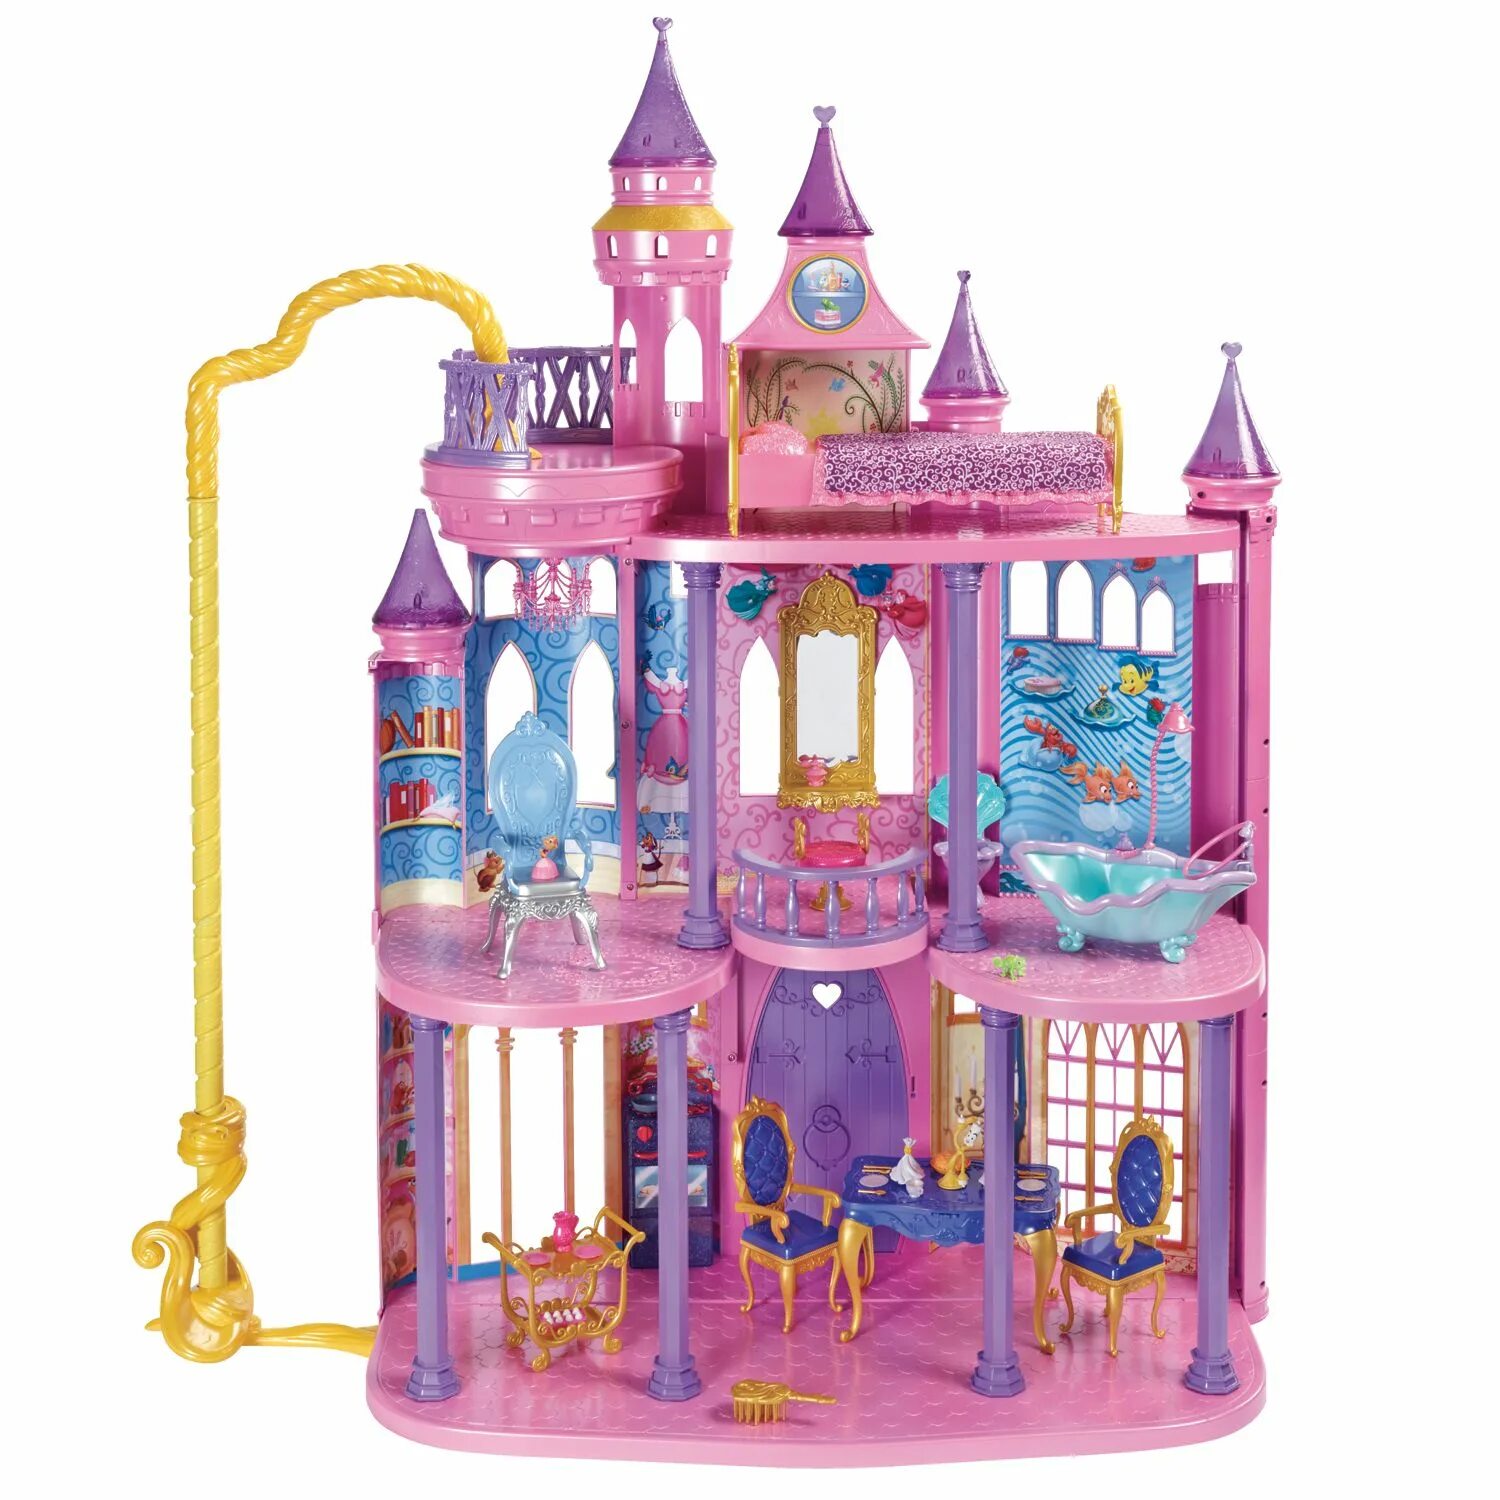 Замок маленькой принцессы. Замок Рапунцель игрушка. Замок для кукол. Замок детский игрушечный. Кукольный замок для девочек.